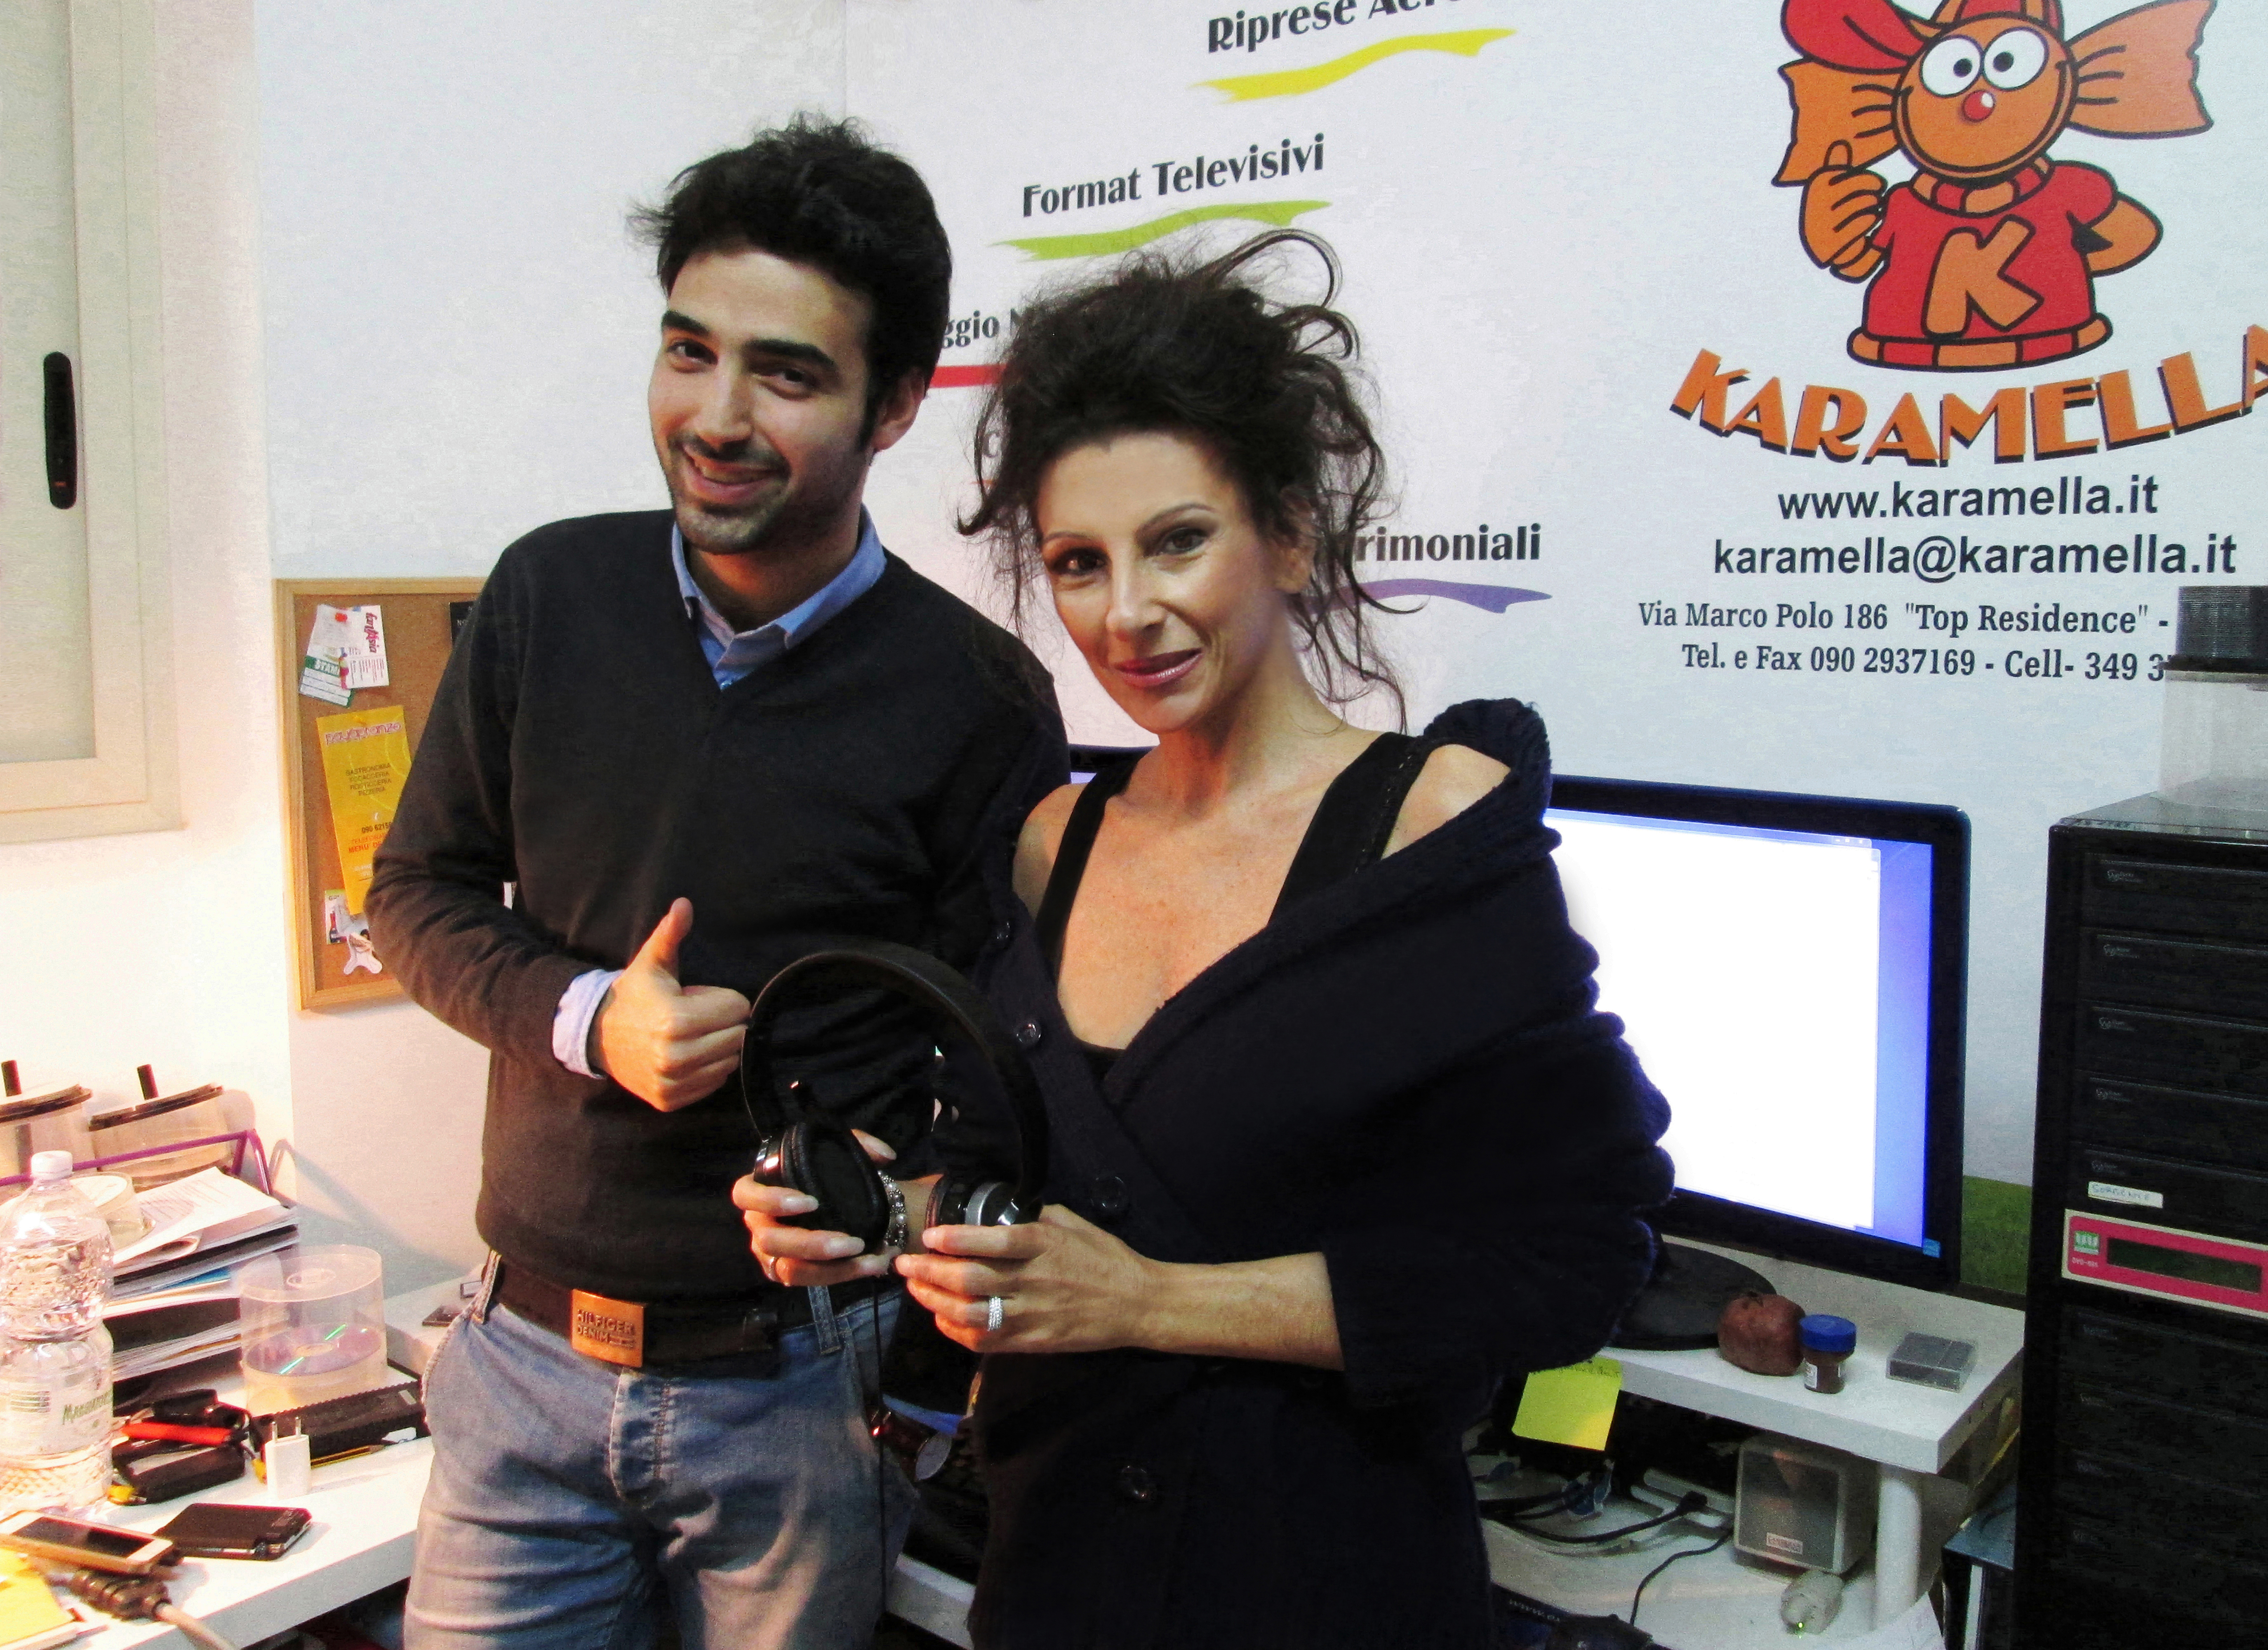 Lucia Aliberti with her Video Maker Antonio Grasso⚘PVK Video Productions⚘Karamella⚘TV Productions⚘:http://www.luciaaliberti.it #luciaaliberti #antoniograsso #pvkvideoproductions #videomaker #tvproductions